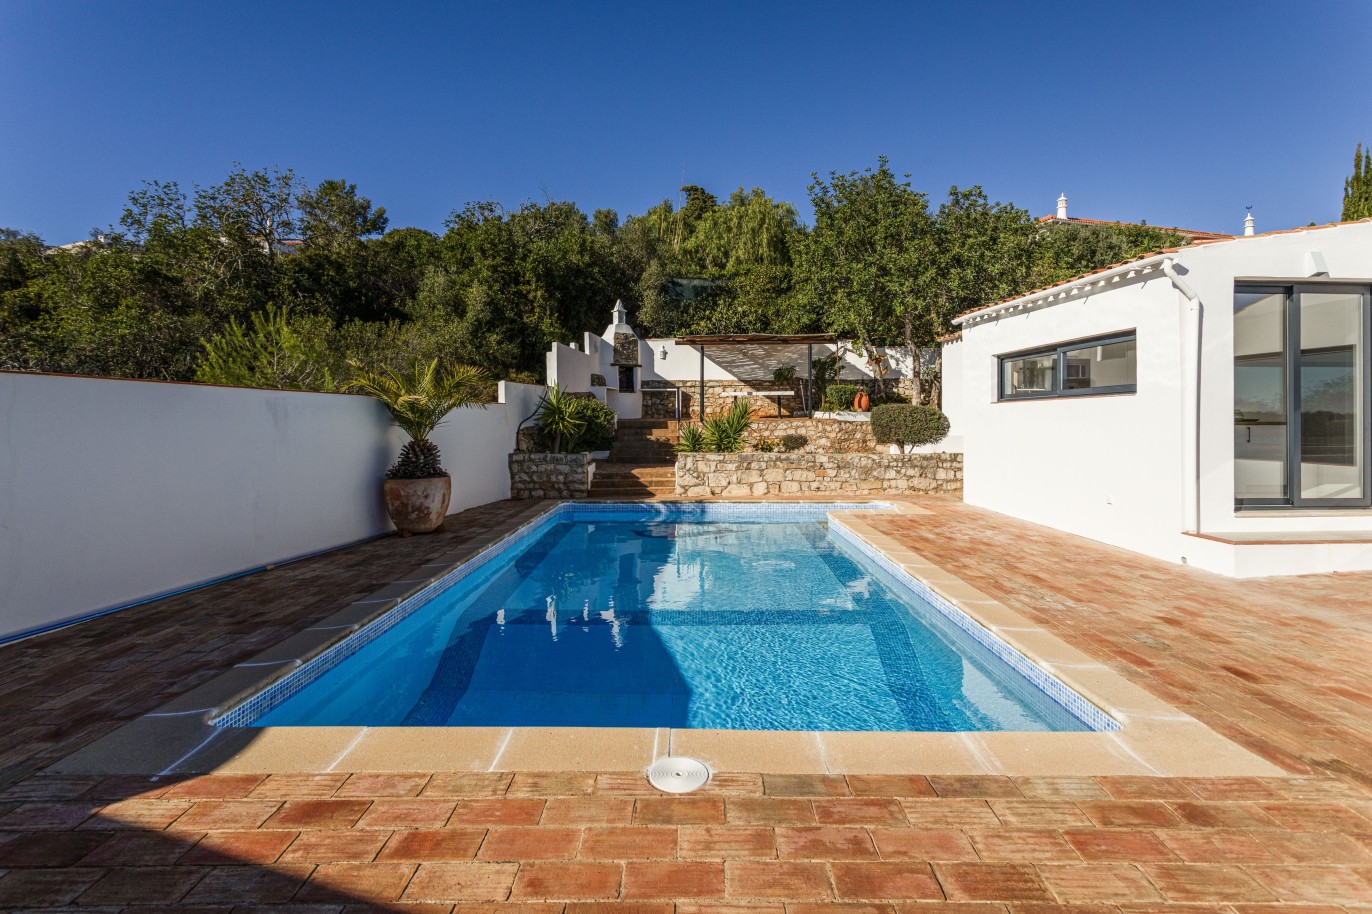 3 bedroom villa with sea view and pool, for sale in Santa Barbara, Algarve_246329